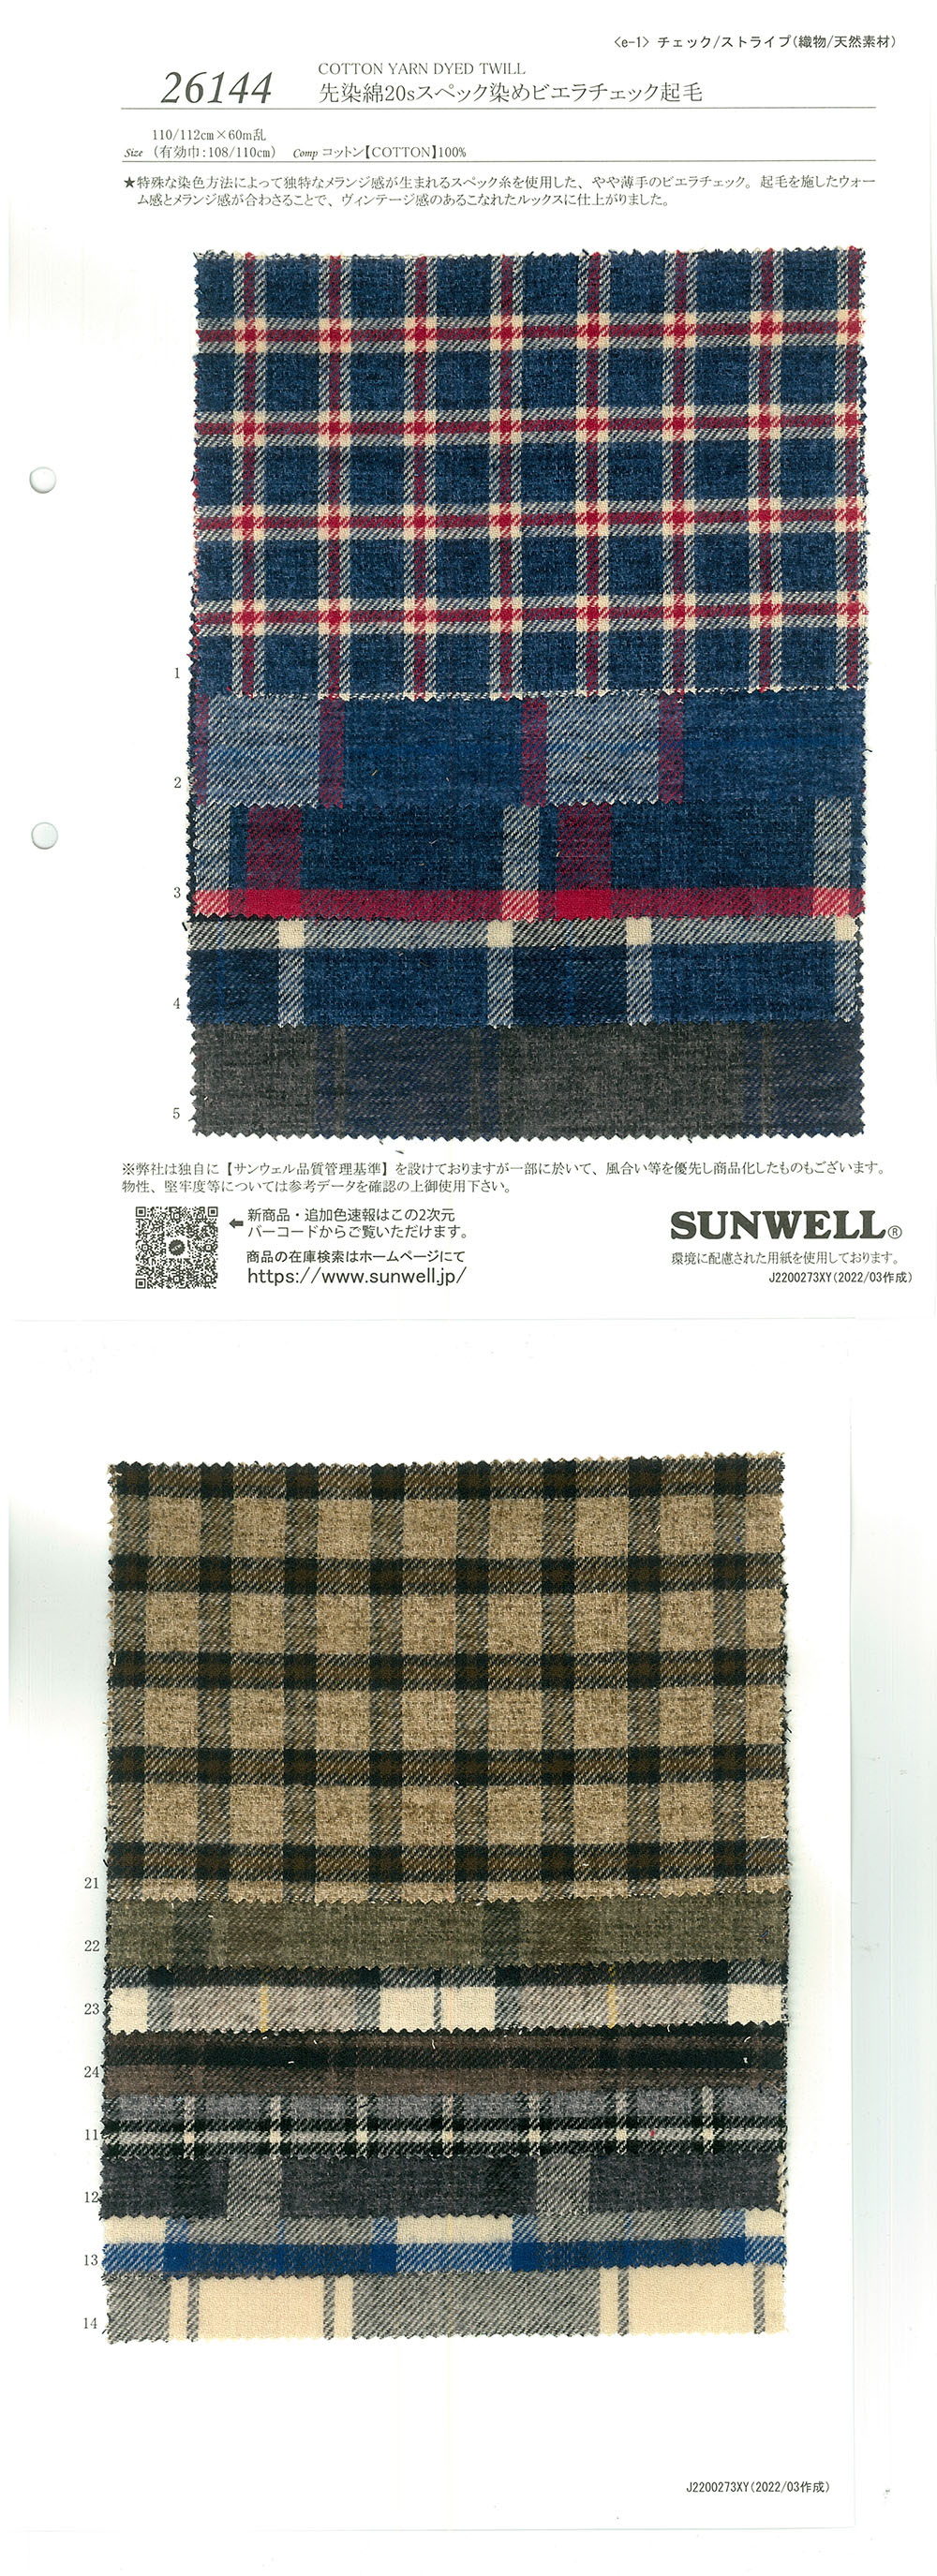 26144 Garngefärbte Baumwolle, 20 Fäden, Gefärbtes Viyella-Karo-Fuzzy[Textilgewebe] SUNWELL